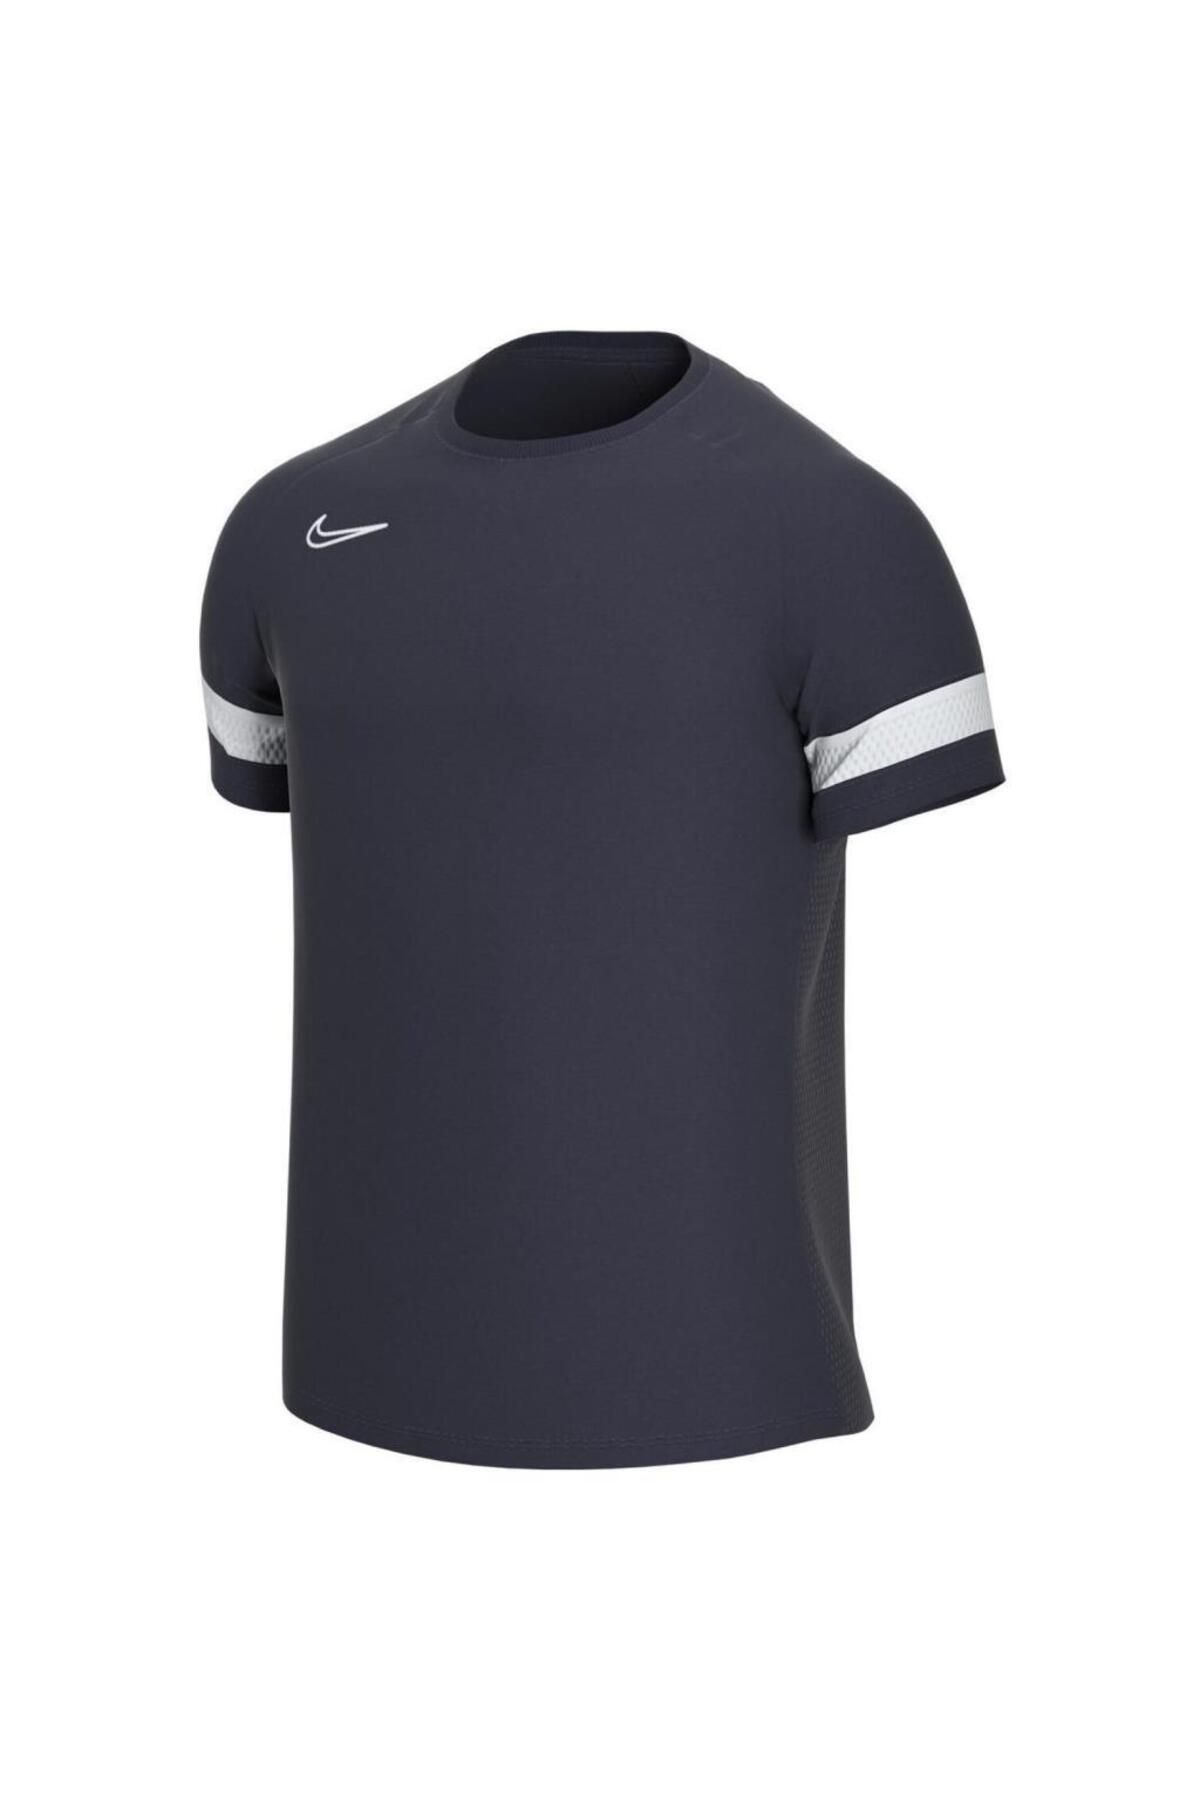 Nike Cw6101 Dri Fit Academy T-shirt Lacivert Beyaz